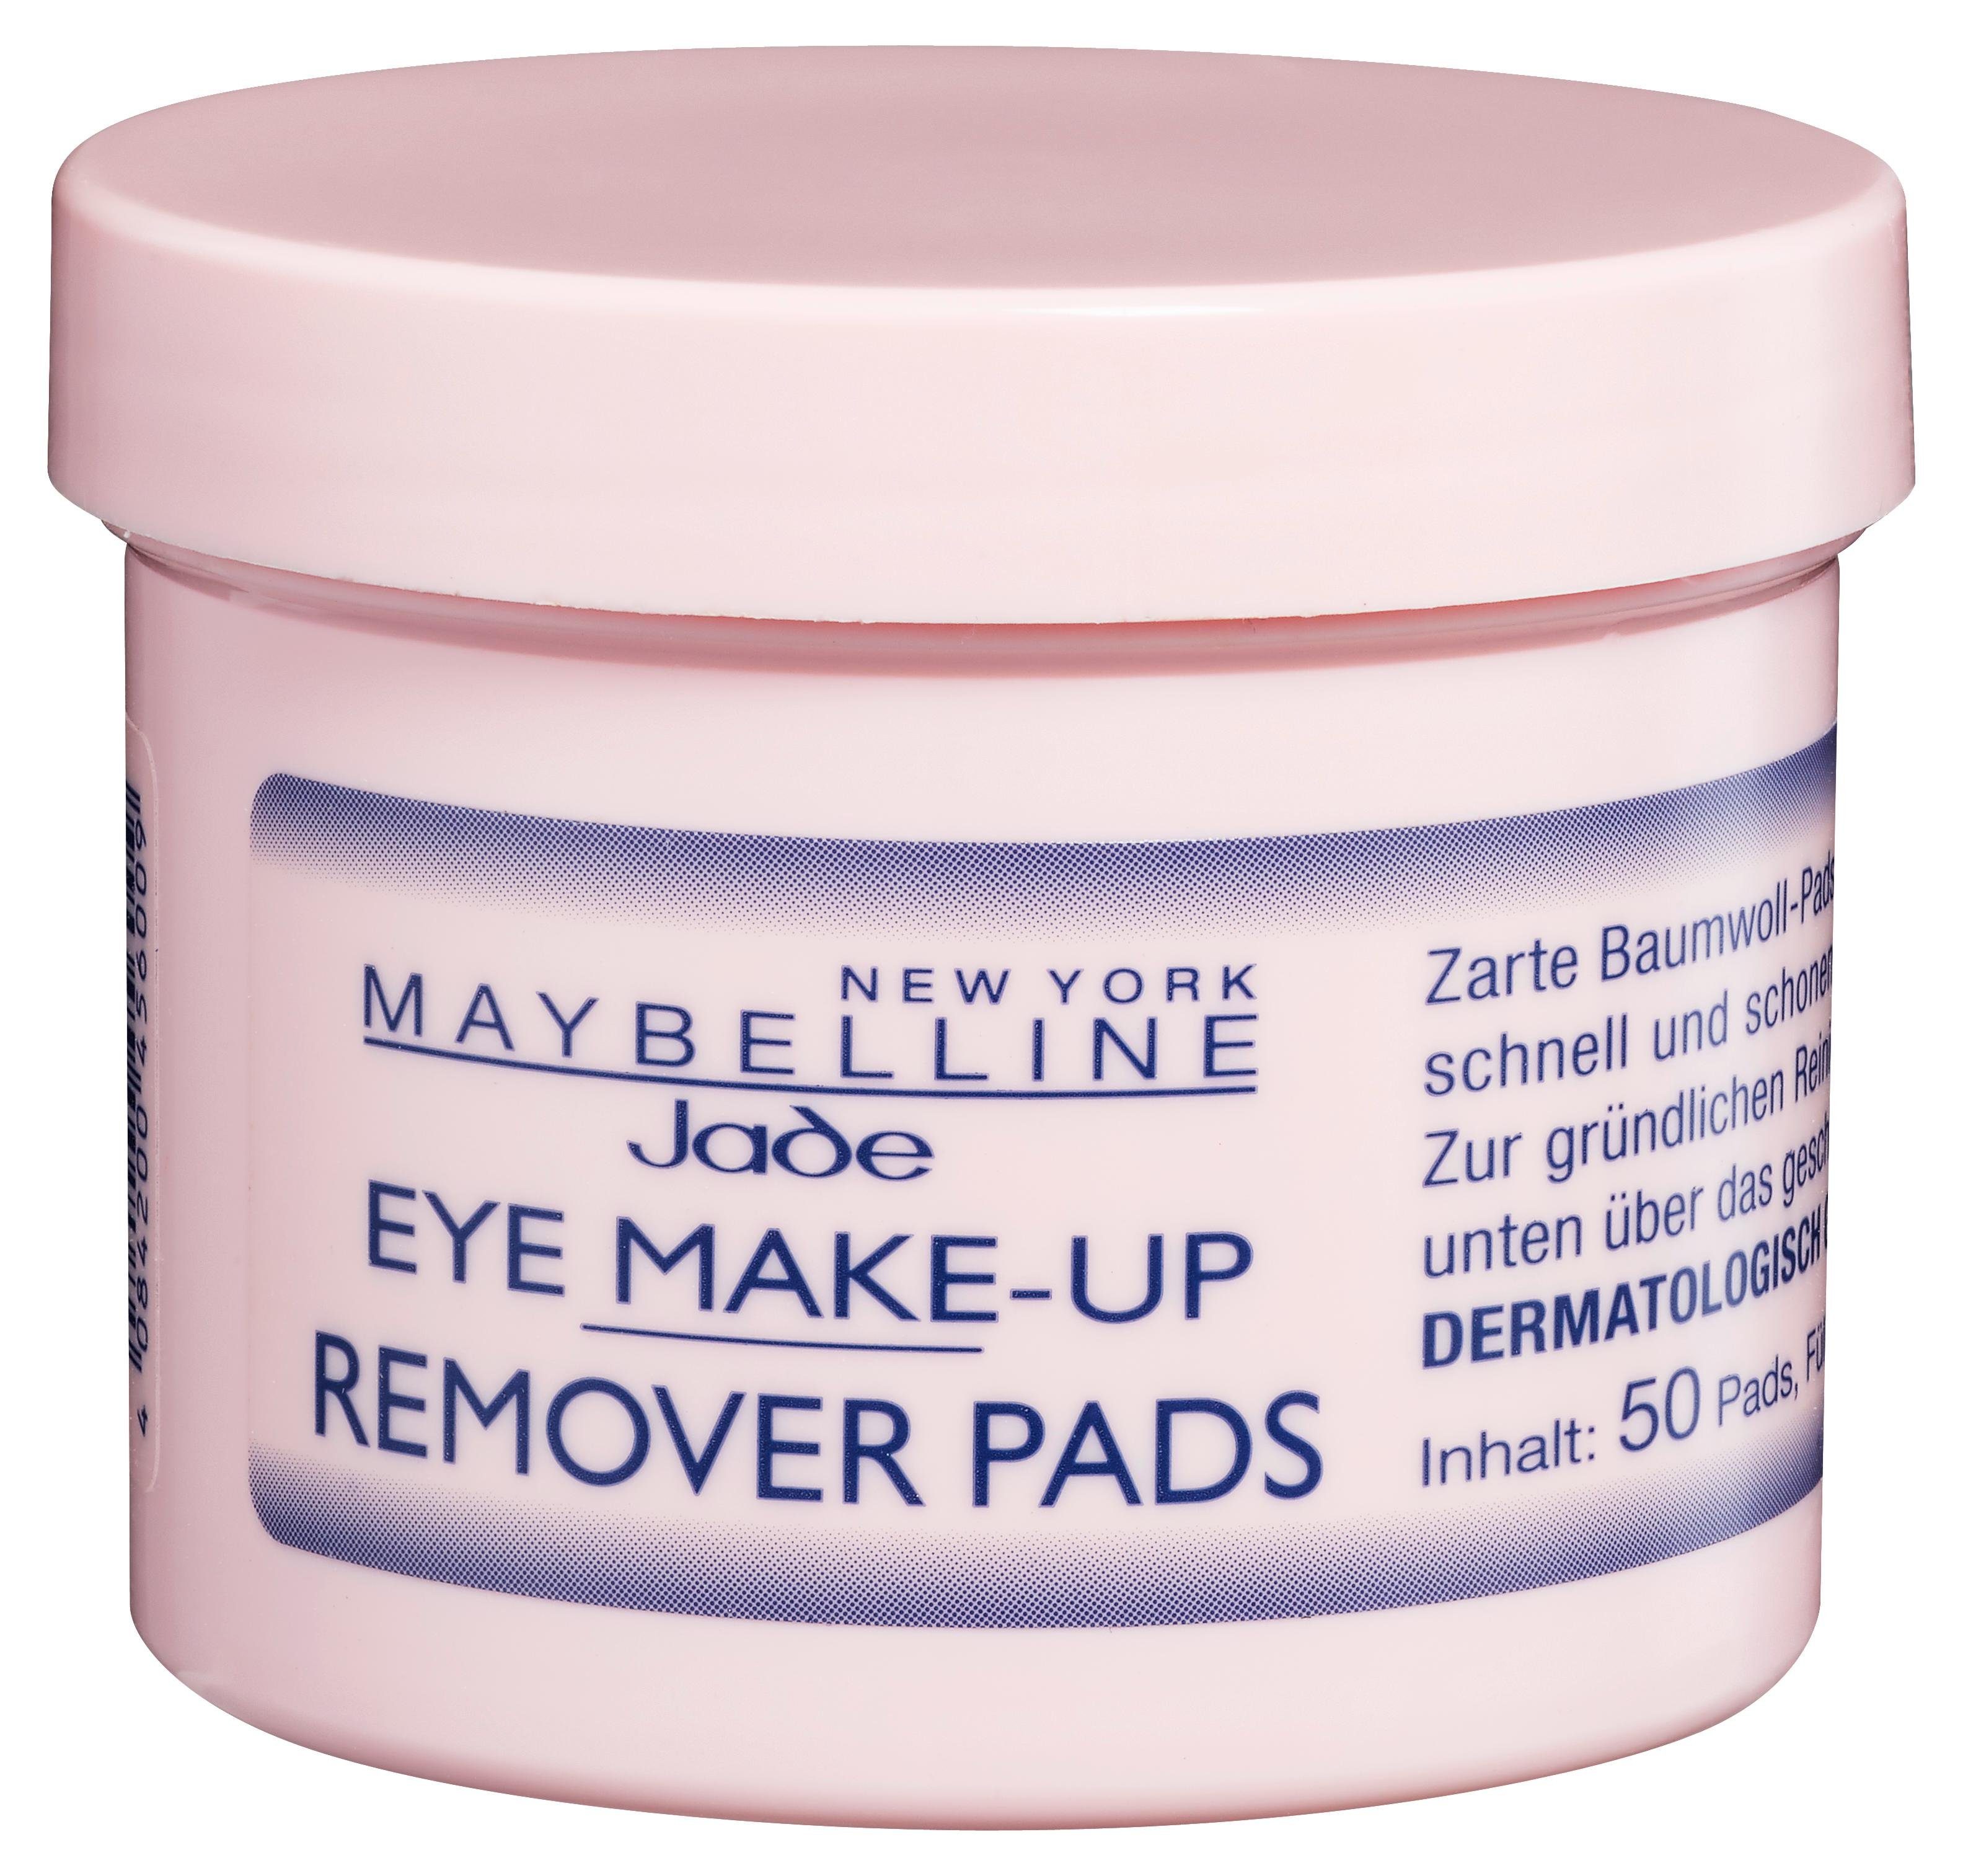 Make-Up NEW YORK Pads Eye Augen-Make-up-Entferner MAYBELLINE Remover